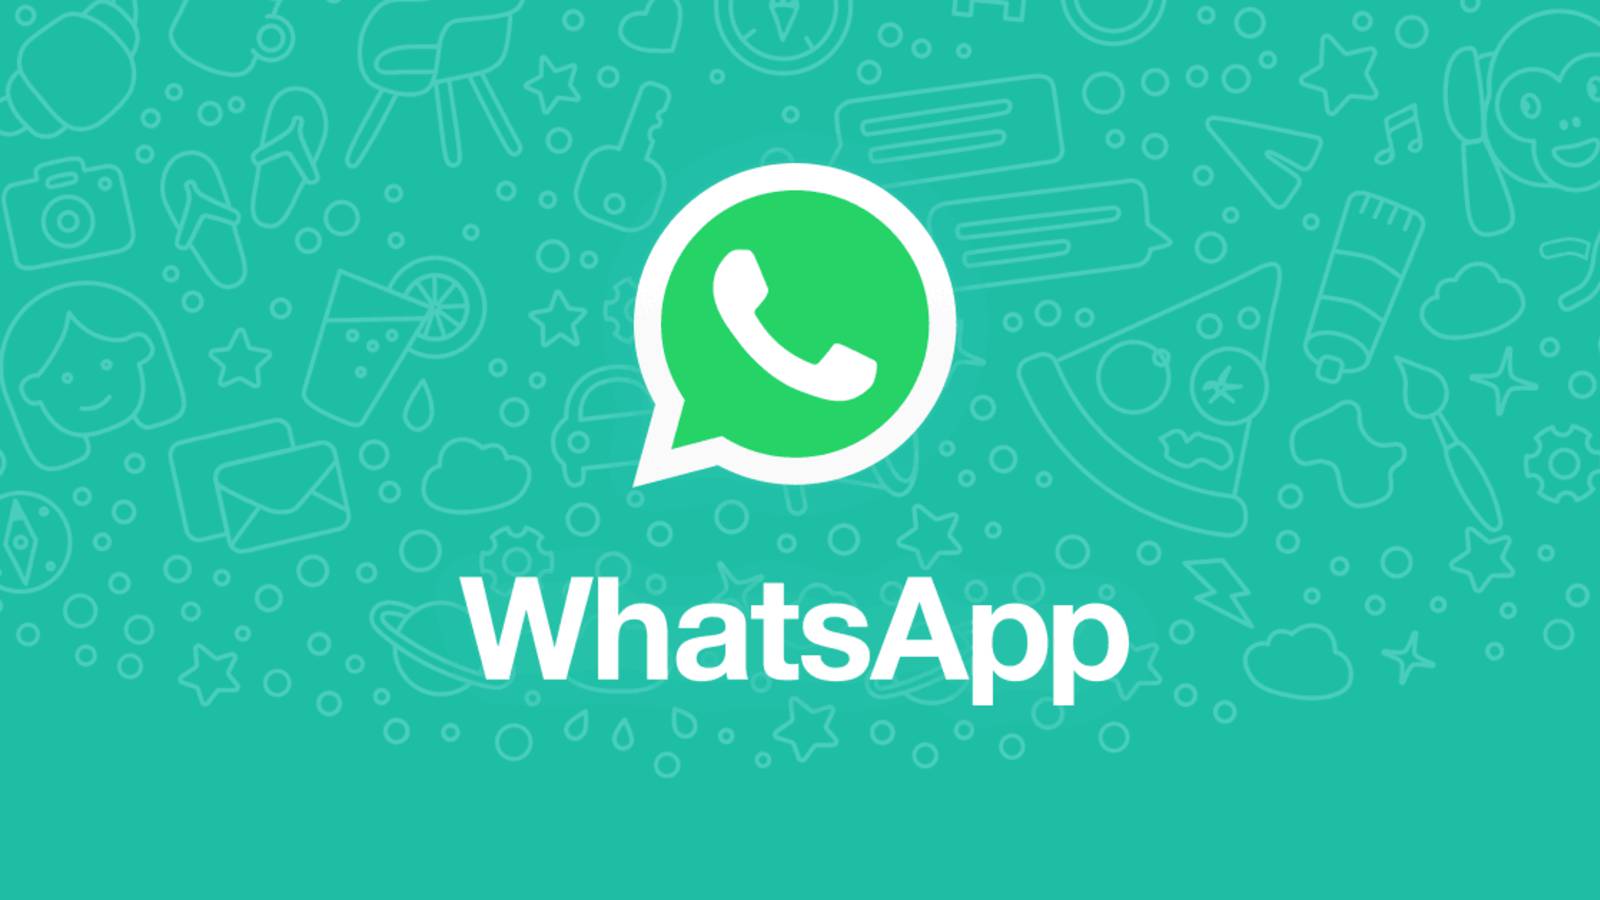 WhatsApp advertising